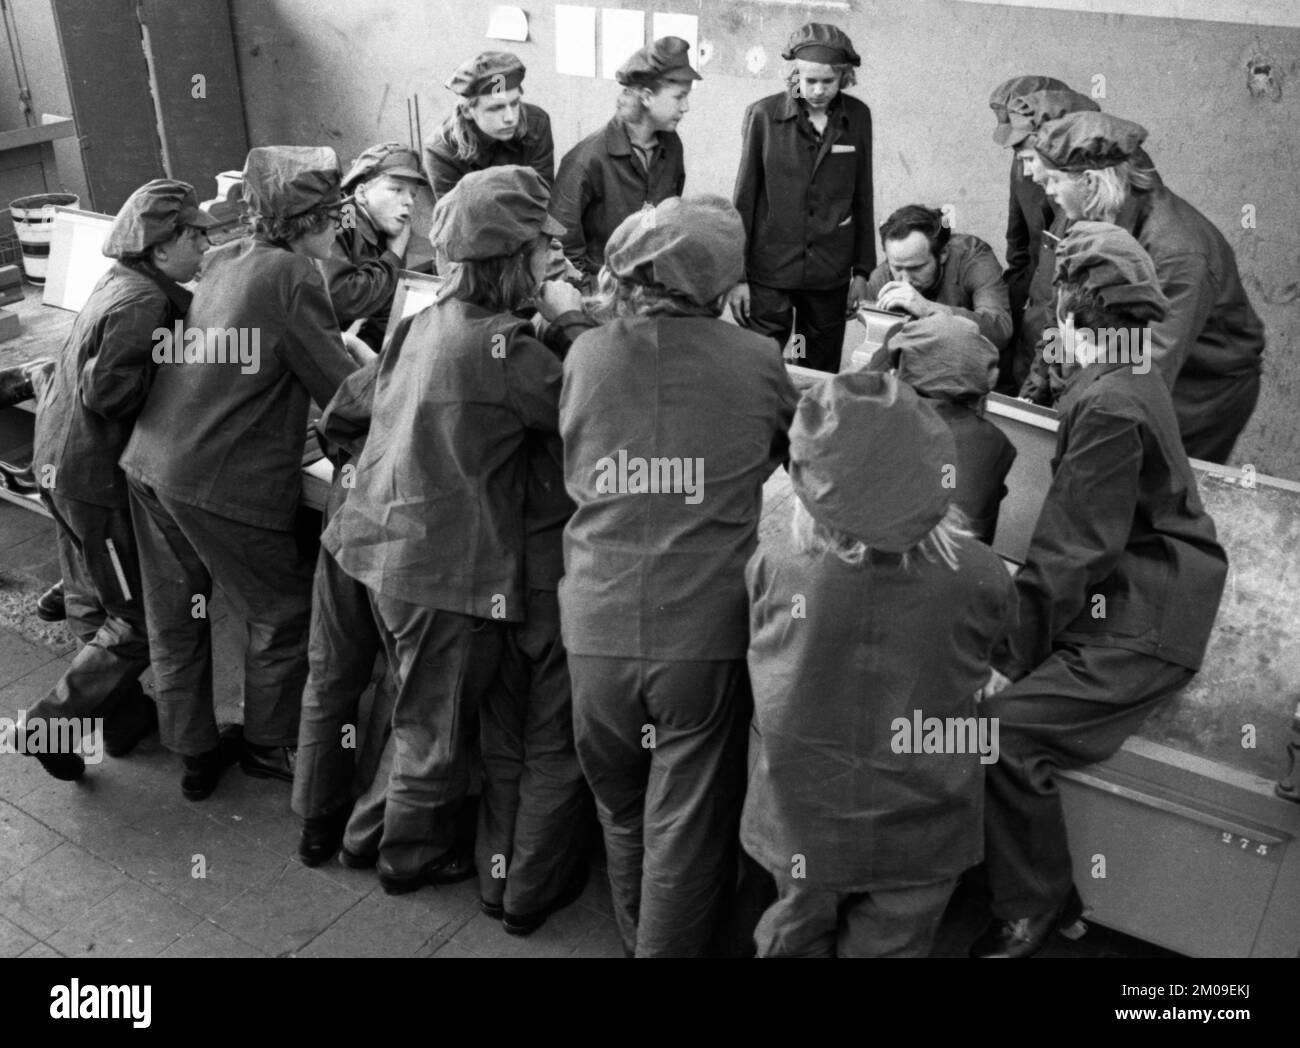 Dans l'atelier de formation de Hoesch AG à Dortmund, ici le 6,8.1974, les apprentis sont formés dans divers métiers, Allemagne, Europe Banque D'Images